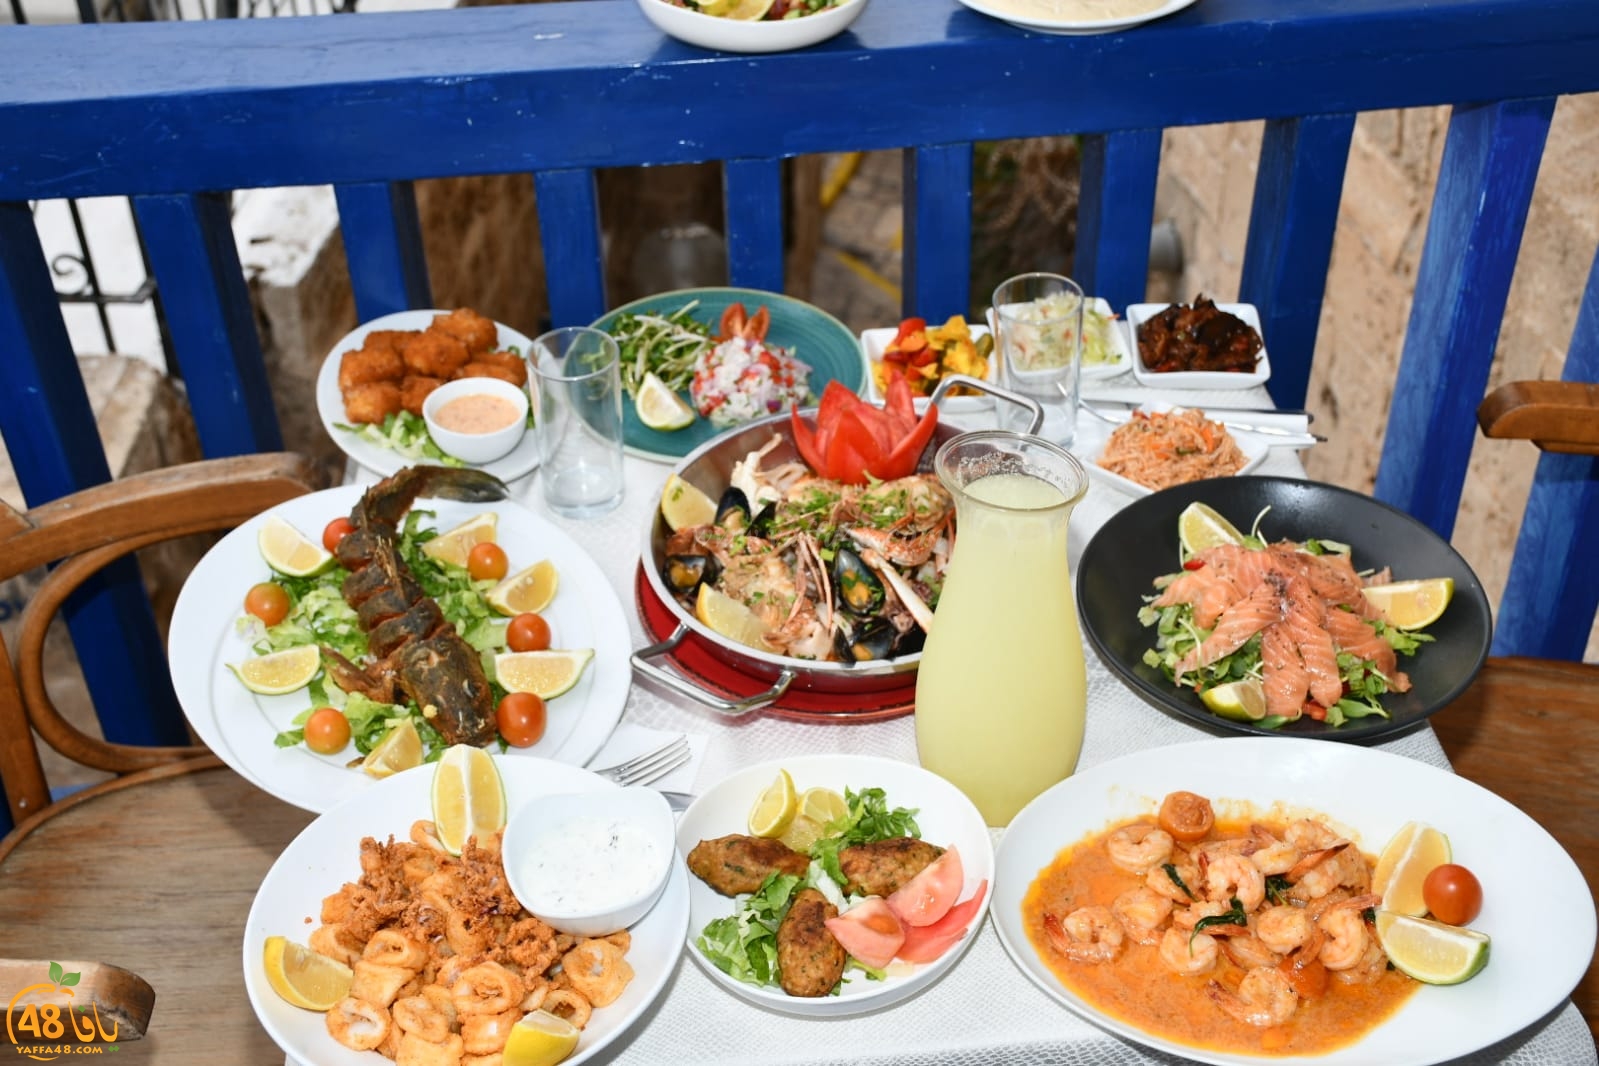  يافا: أشهى الوجبات البحرية الفاخرة في مطعم أبراج البلدة القديمة 